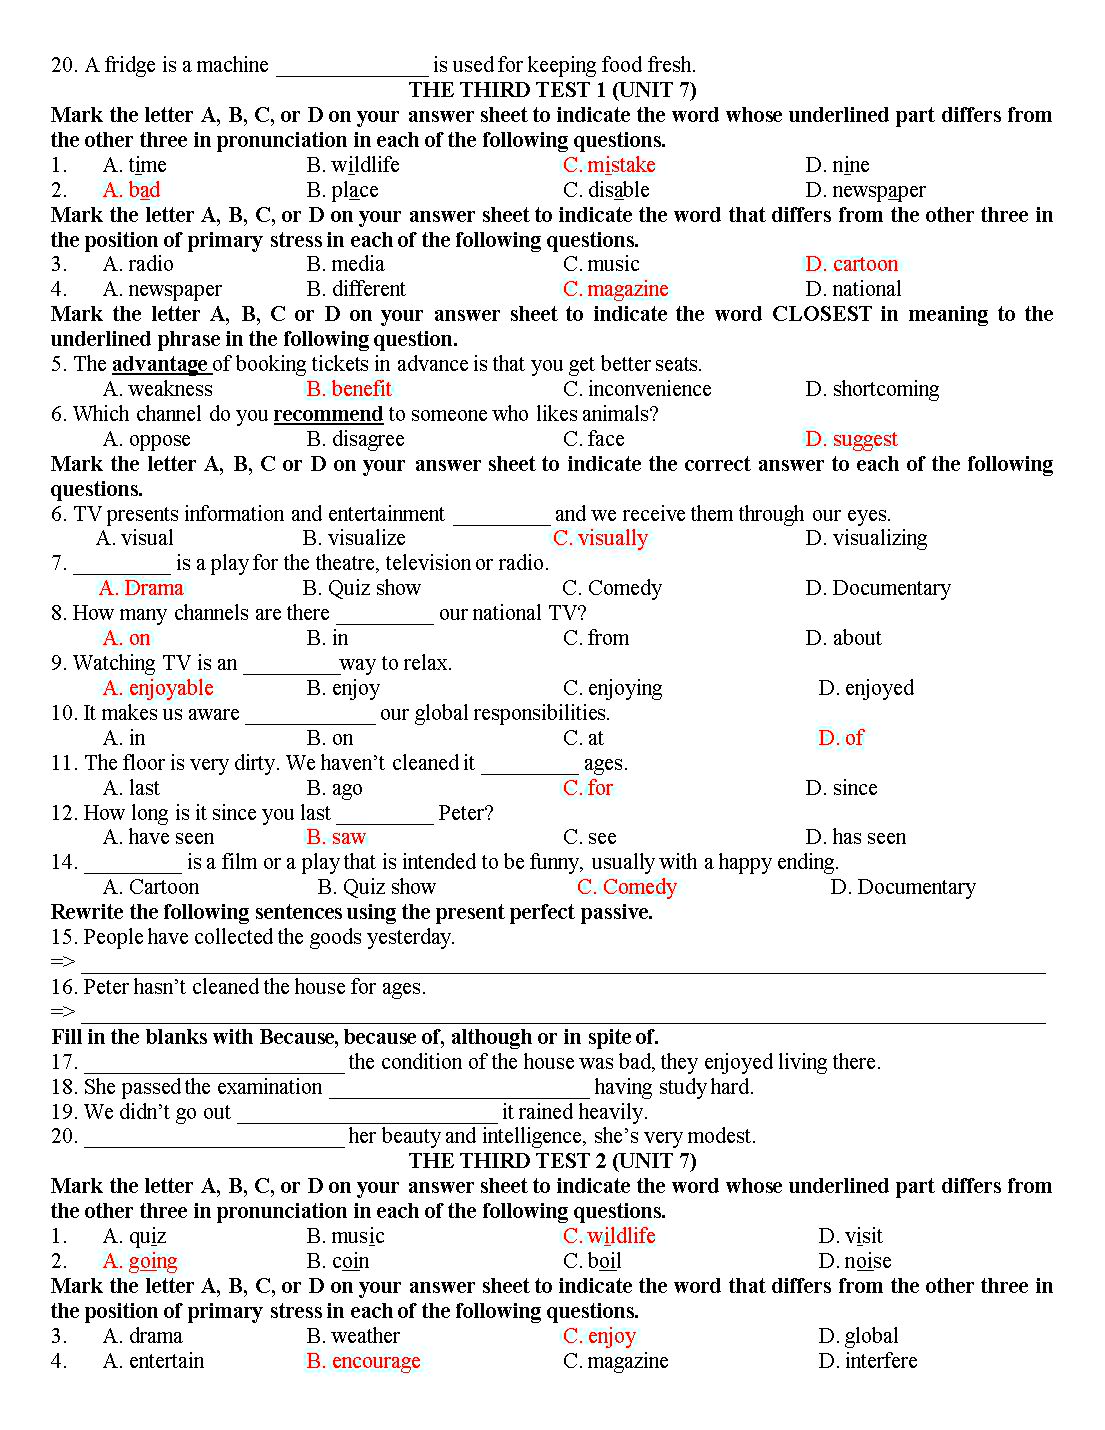 Tổng hợp đề kiểm tra 15 phút tiếng Anh lớp 10 trang 5